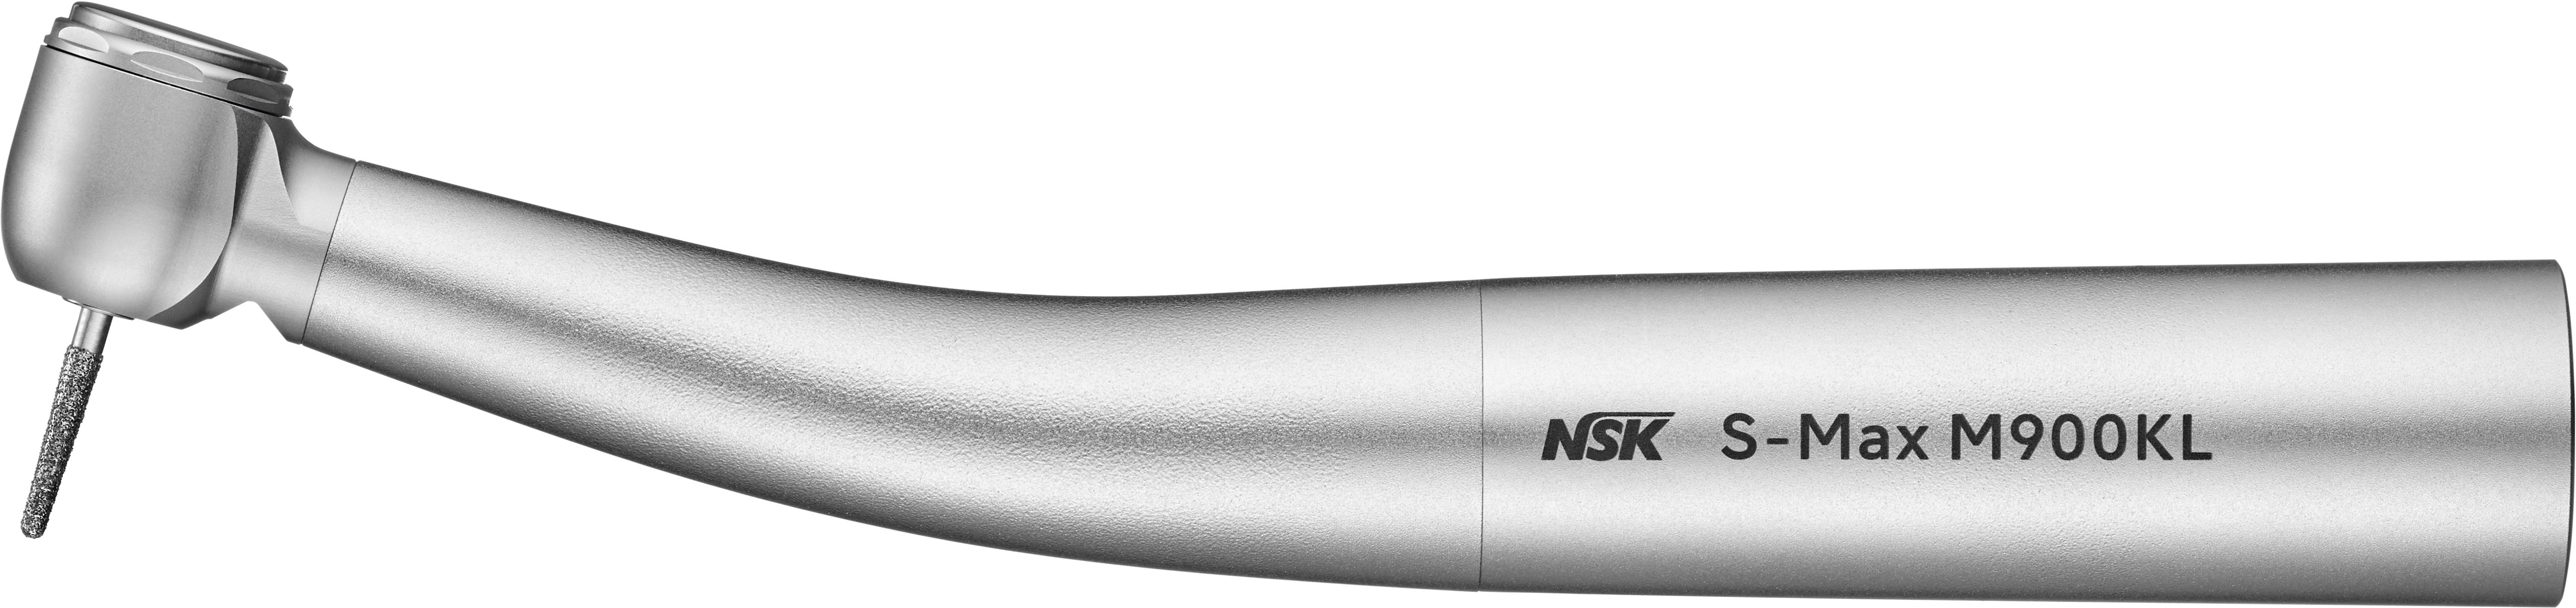 NSK S-Max M900KL, Lichtturbine, KaVo MULTIflex-Anschluss  -  4-fach Spray, Druckknopfspannzange, Keramik-Kugellager  | Art.Nr.:  P1258